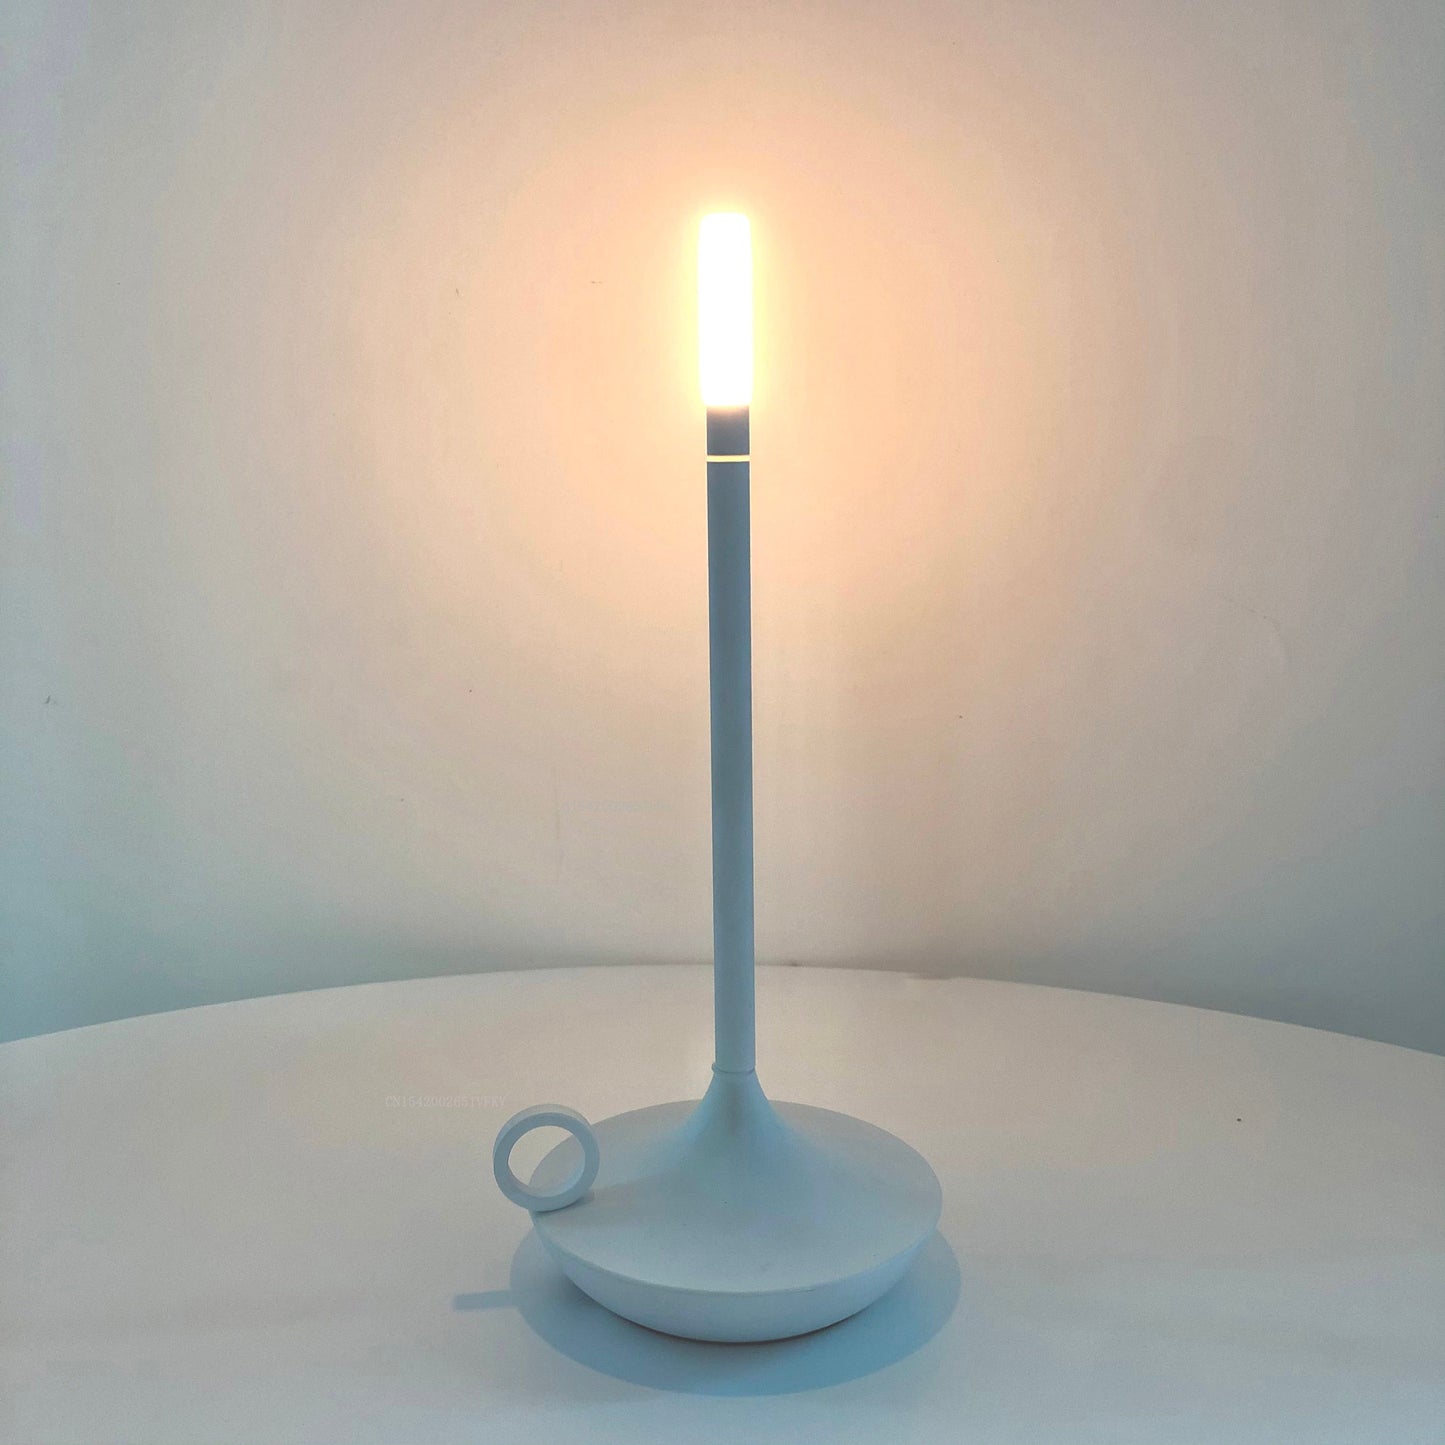 Lampu meja untuk kamar tidur isi ulang lampu sentuh nirkabel berkemah lilin lampu kreatif lampu desk usb-c